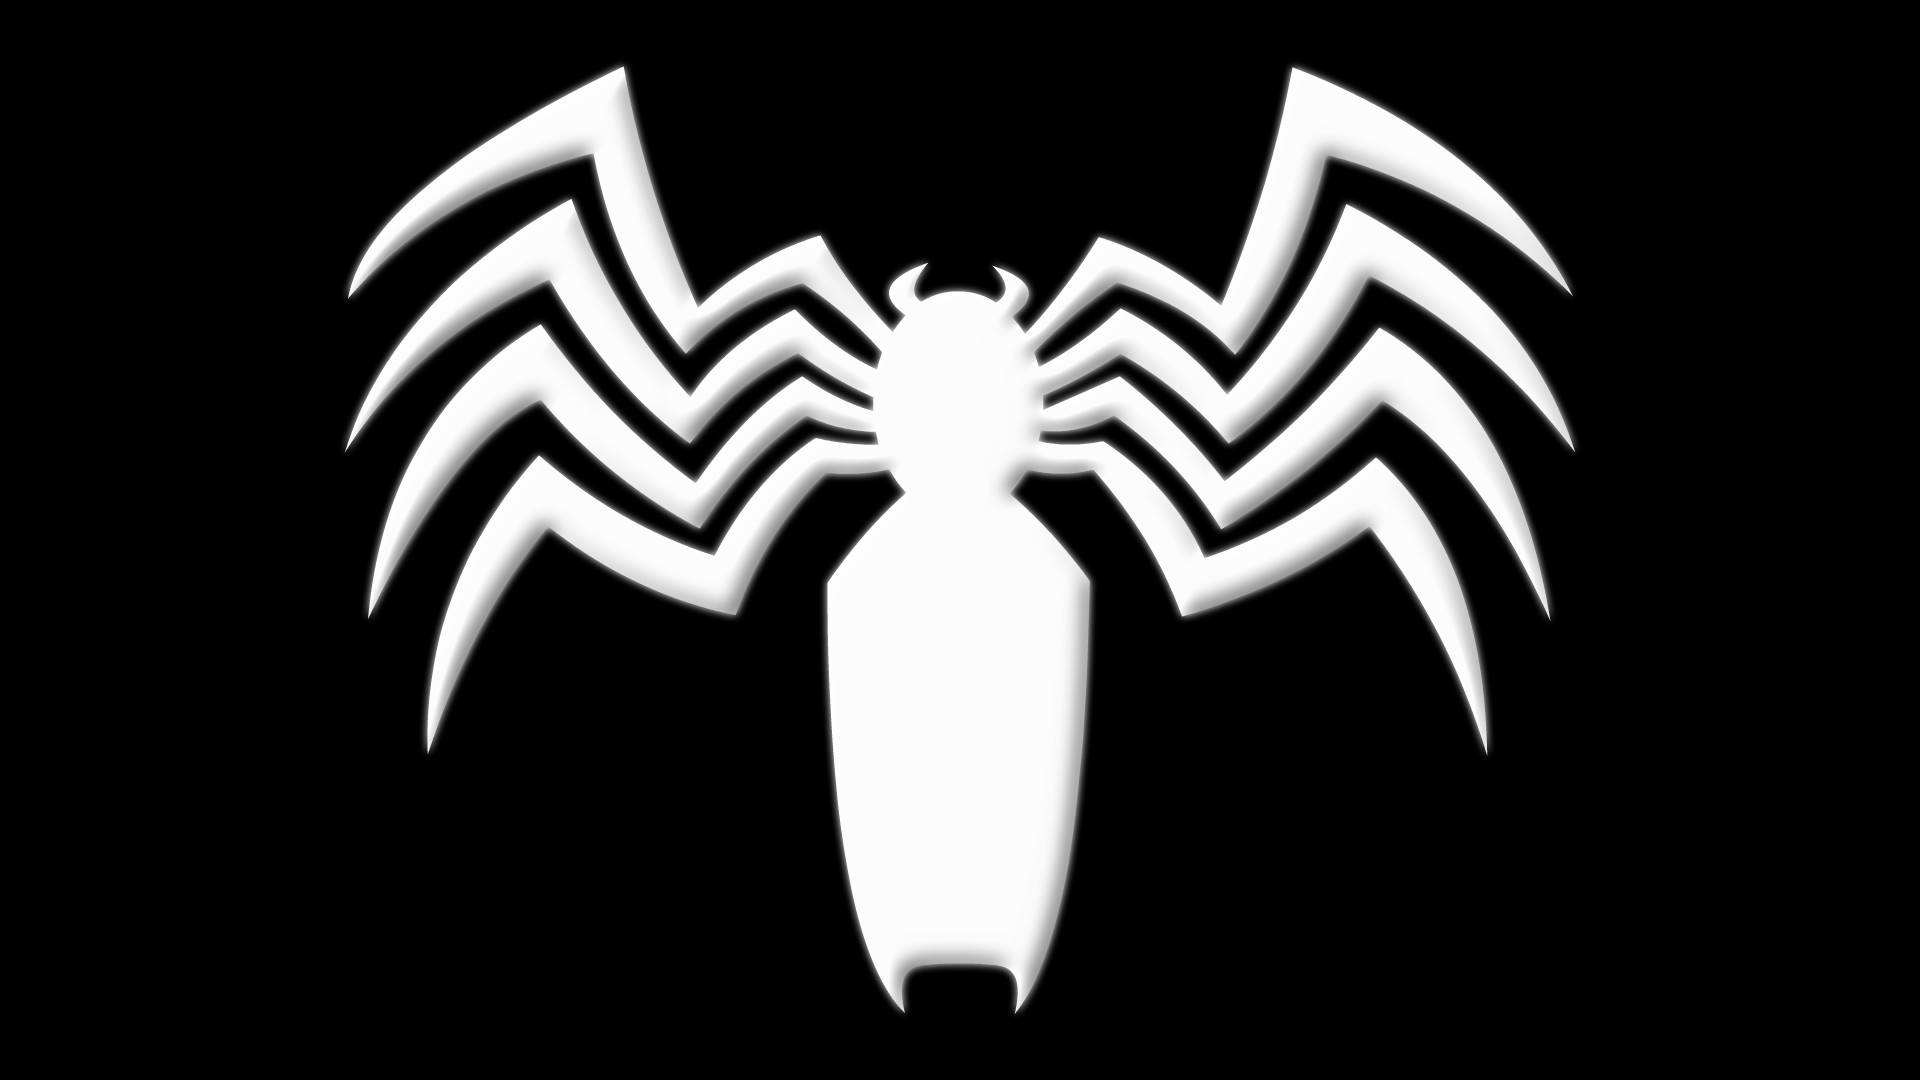 1920x1080 ... Symbiote Spider-Man Symbol by Yurtigo